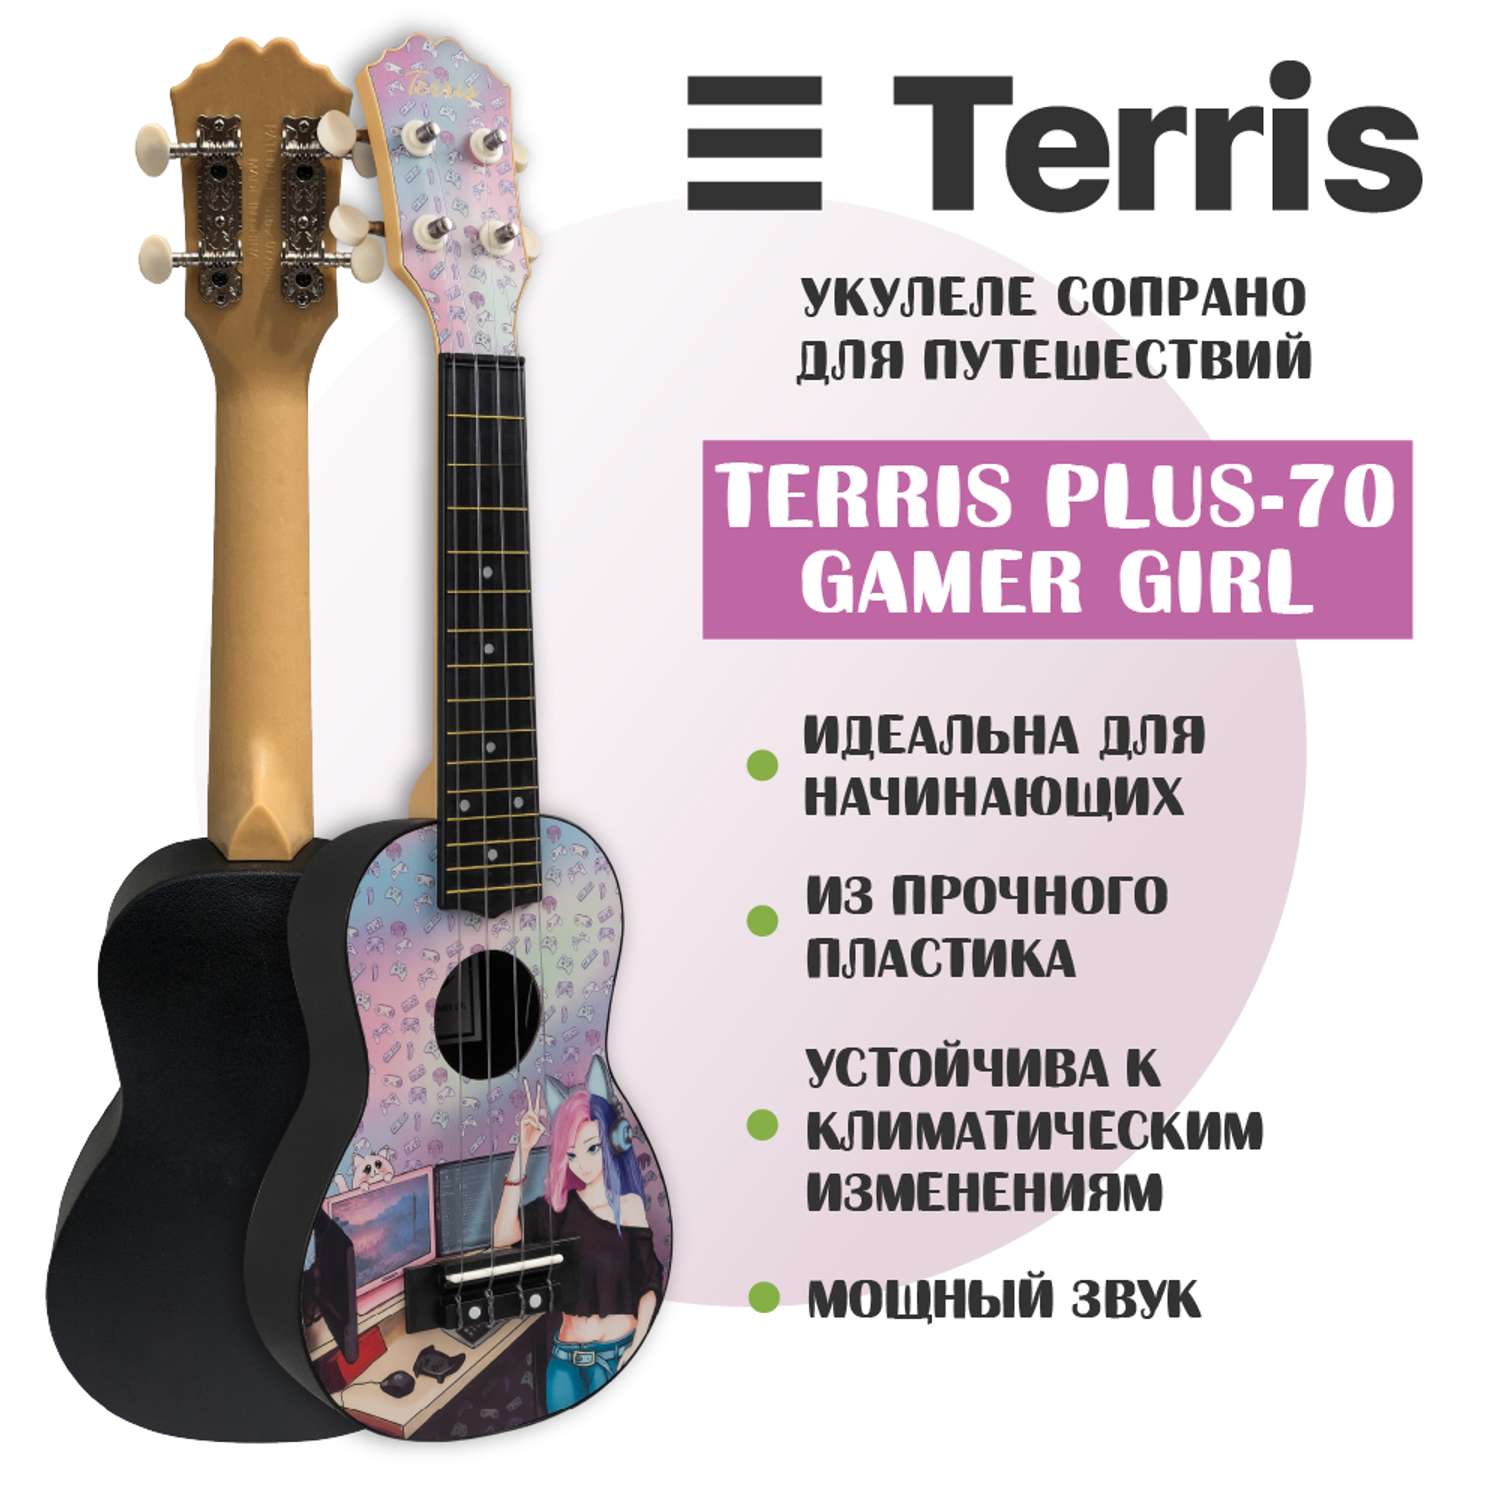 Гитара гавайская Terris укулеле сопрано PLUS-70 GAMER GIRL - фото 2